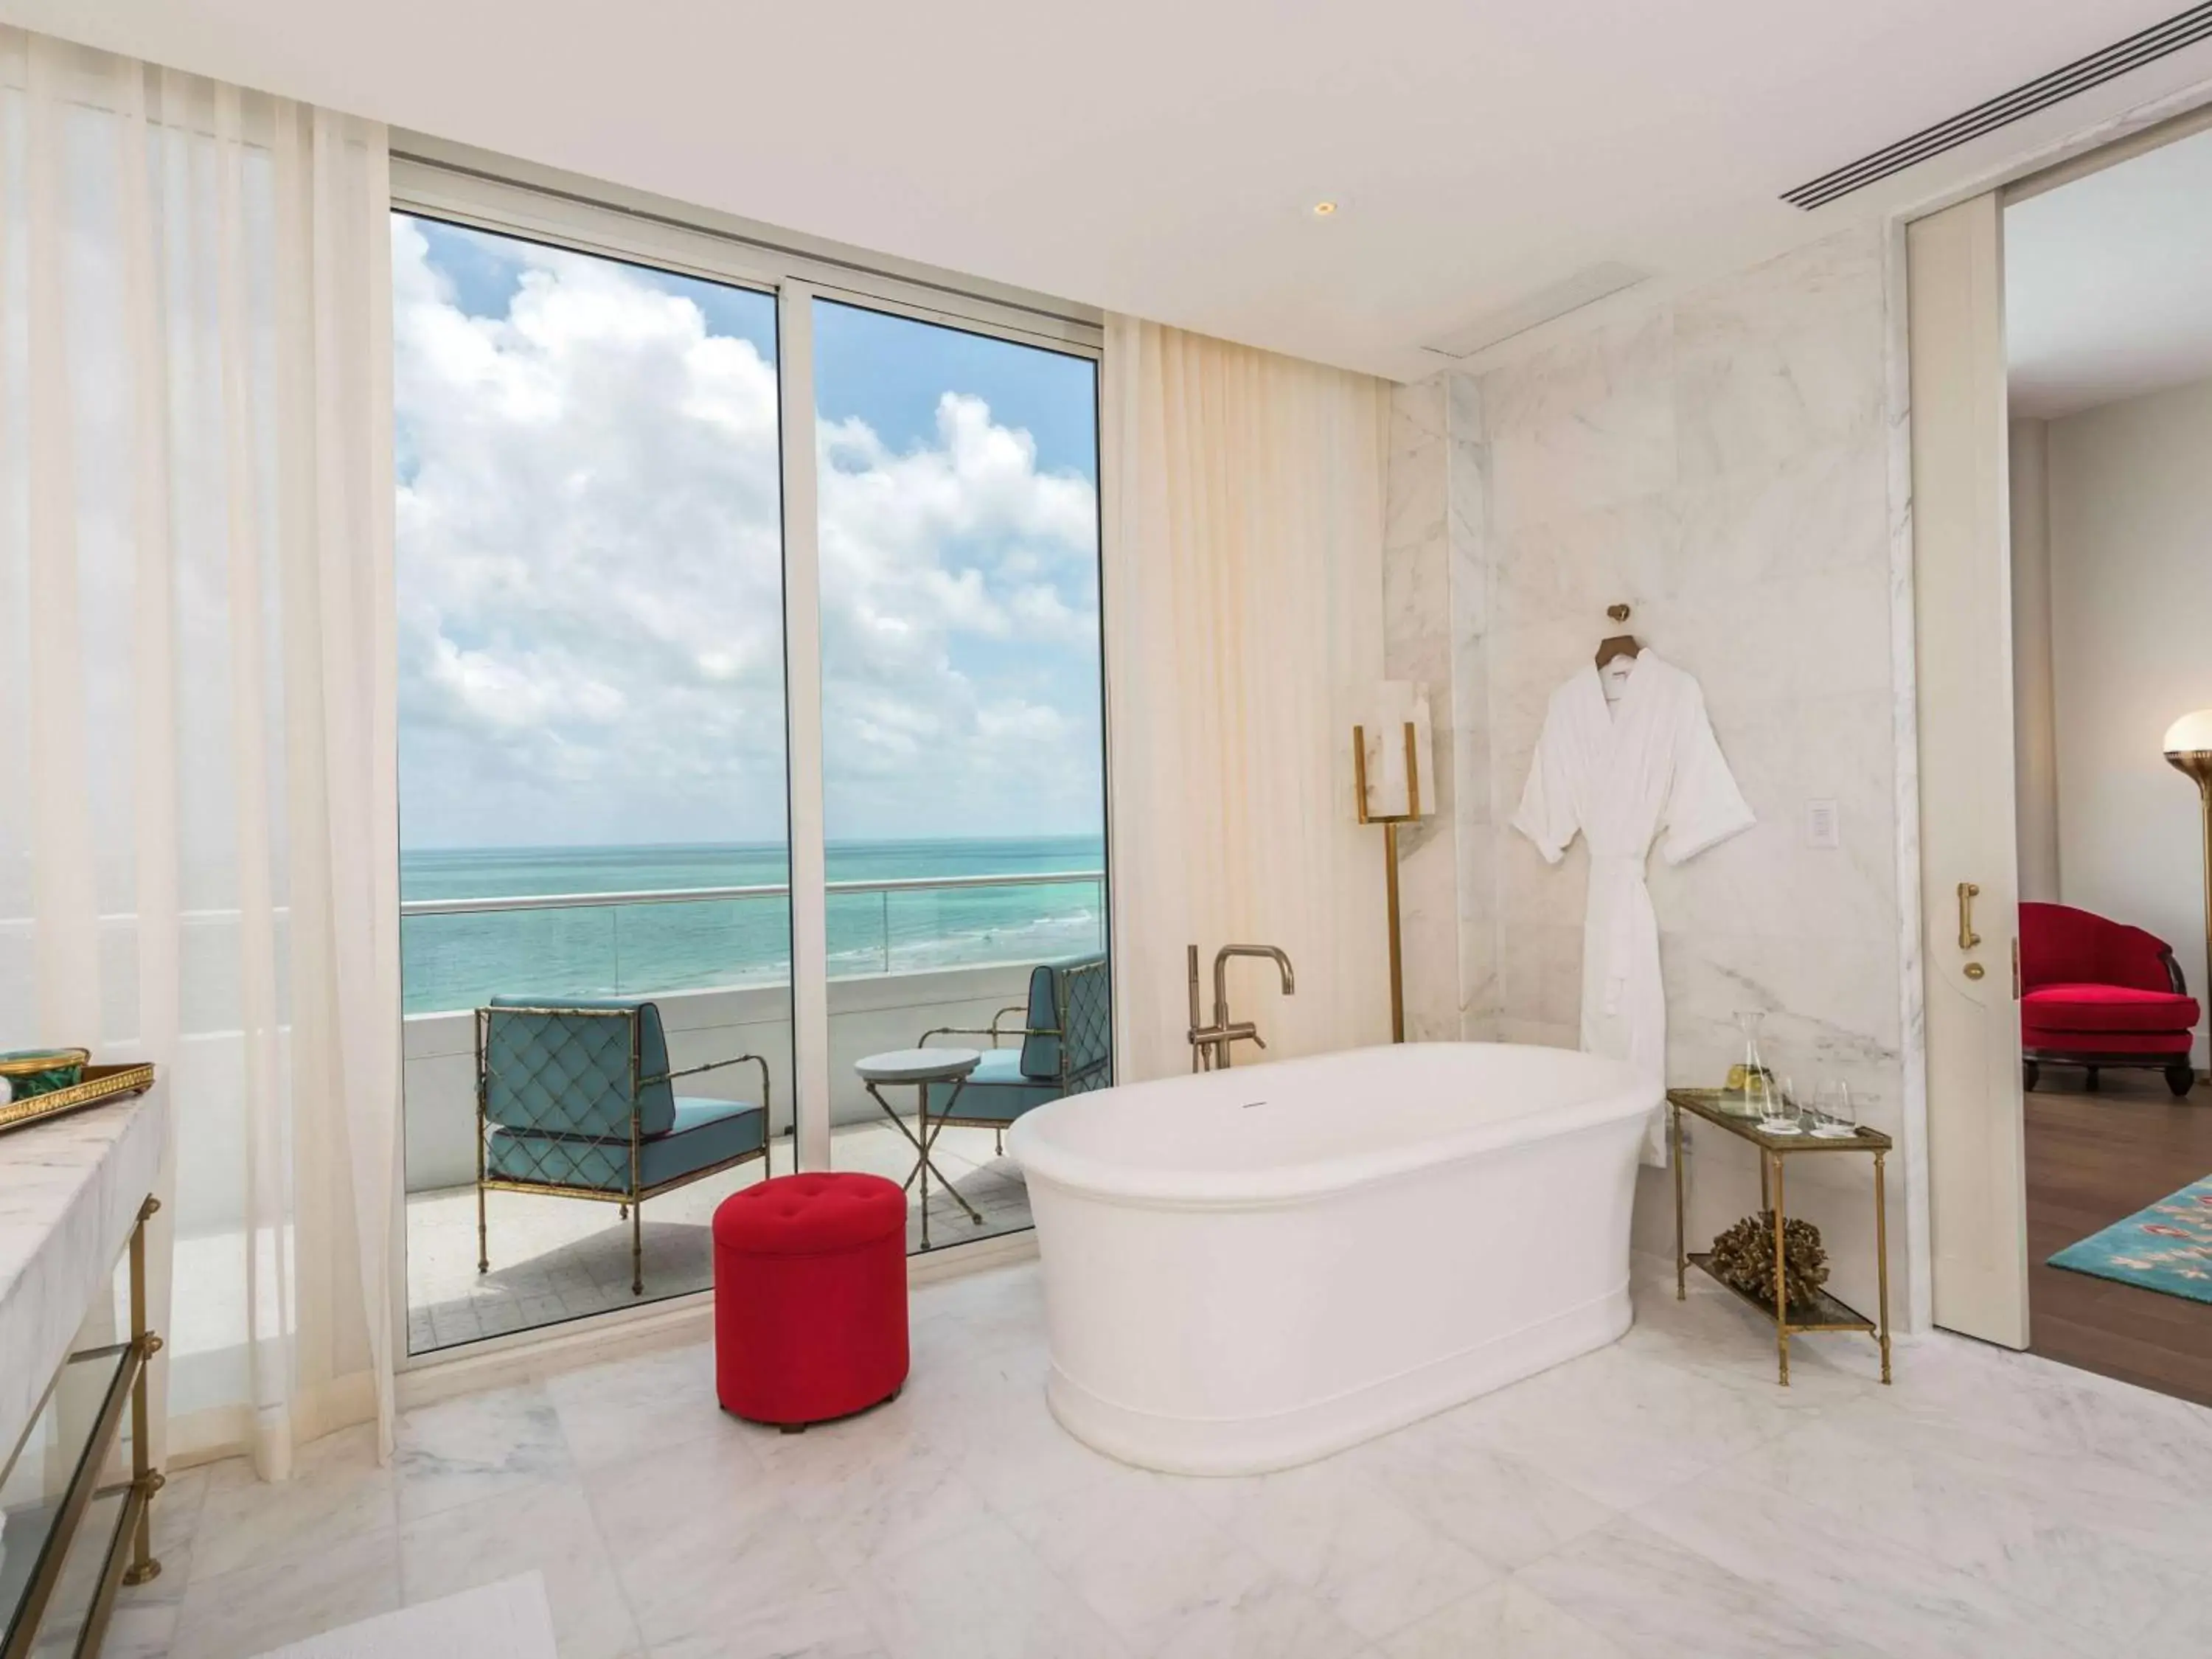 Bathroom in Faena Hotel Miami Beach